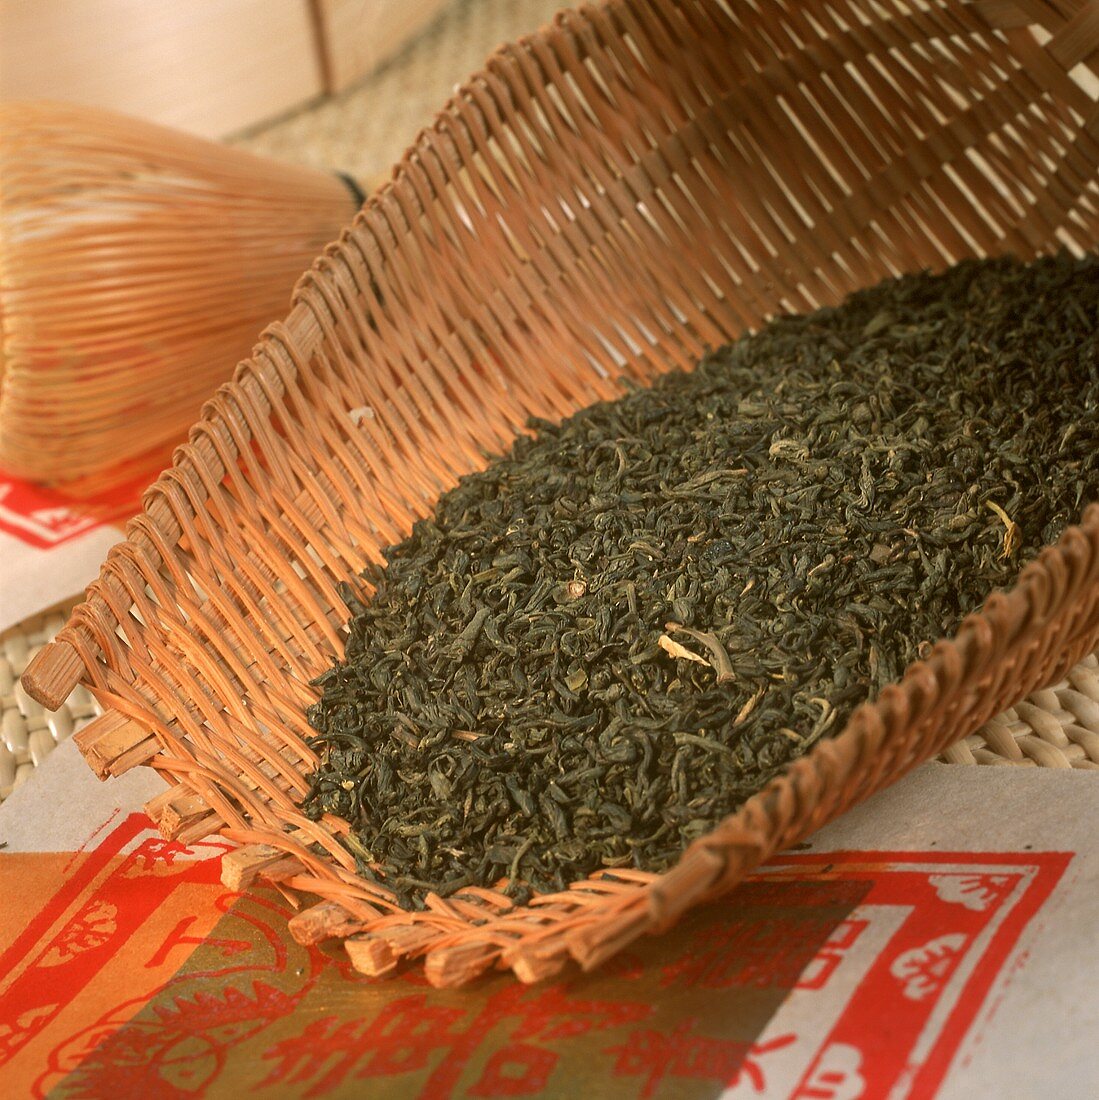 Dried tea leaves